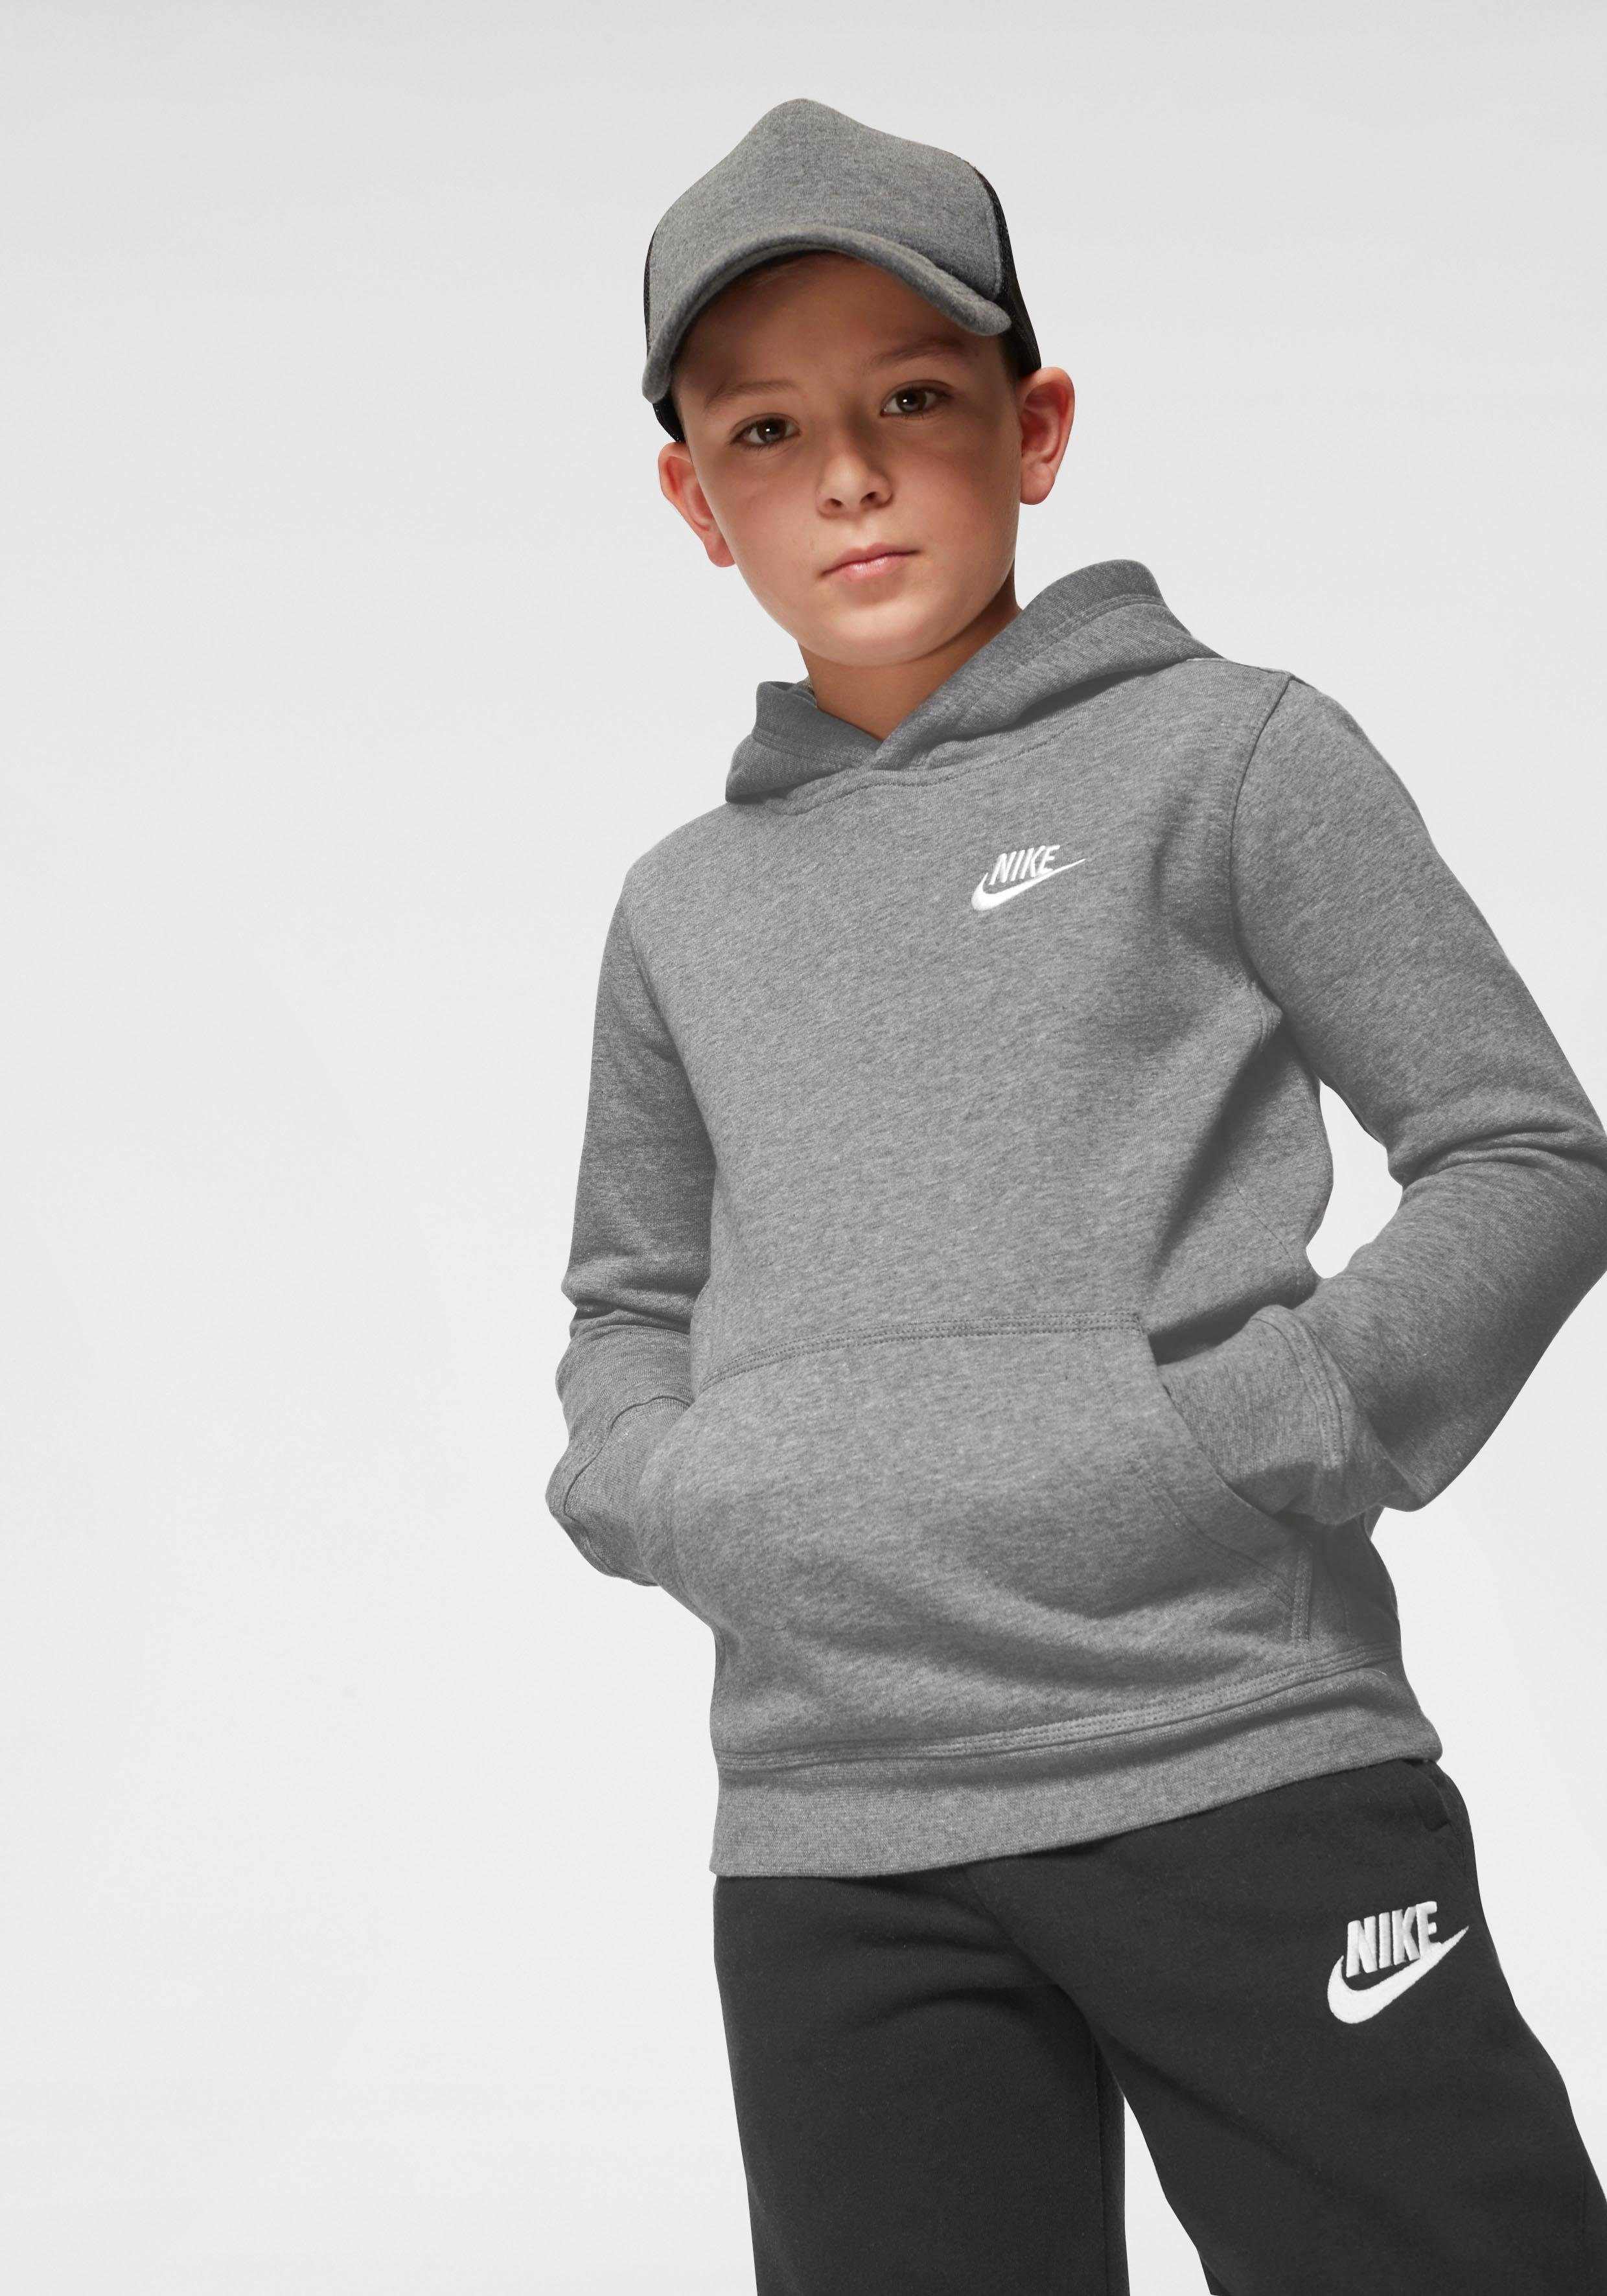 Kids' Club Nike Pullover Big grau-meliert Hoodie Kapuzensweatshirt Sportswear